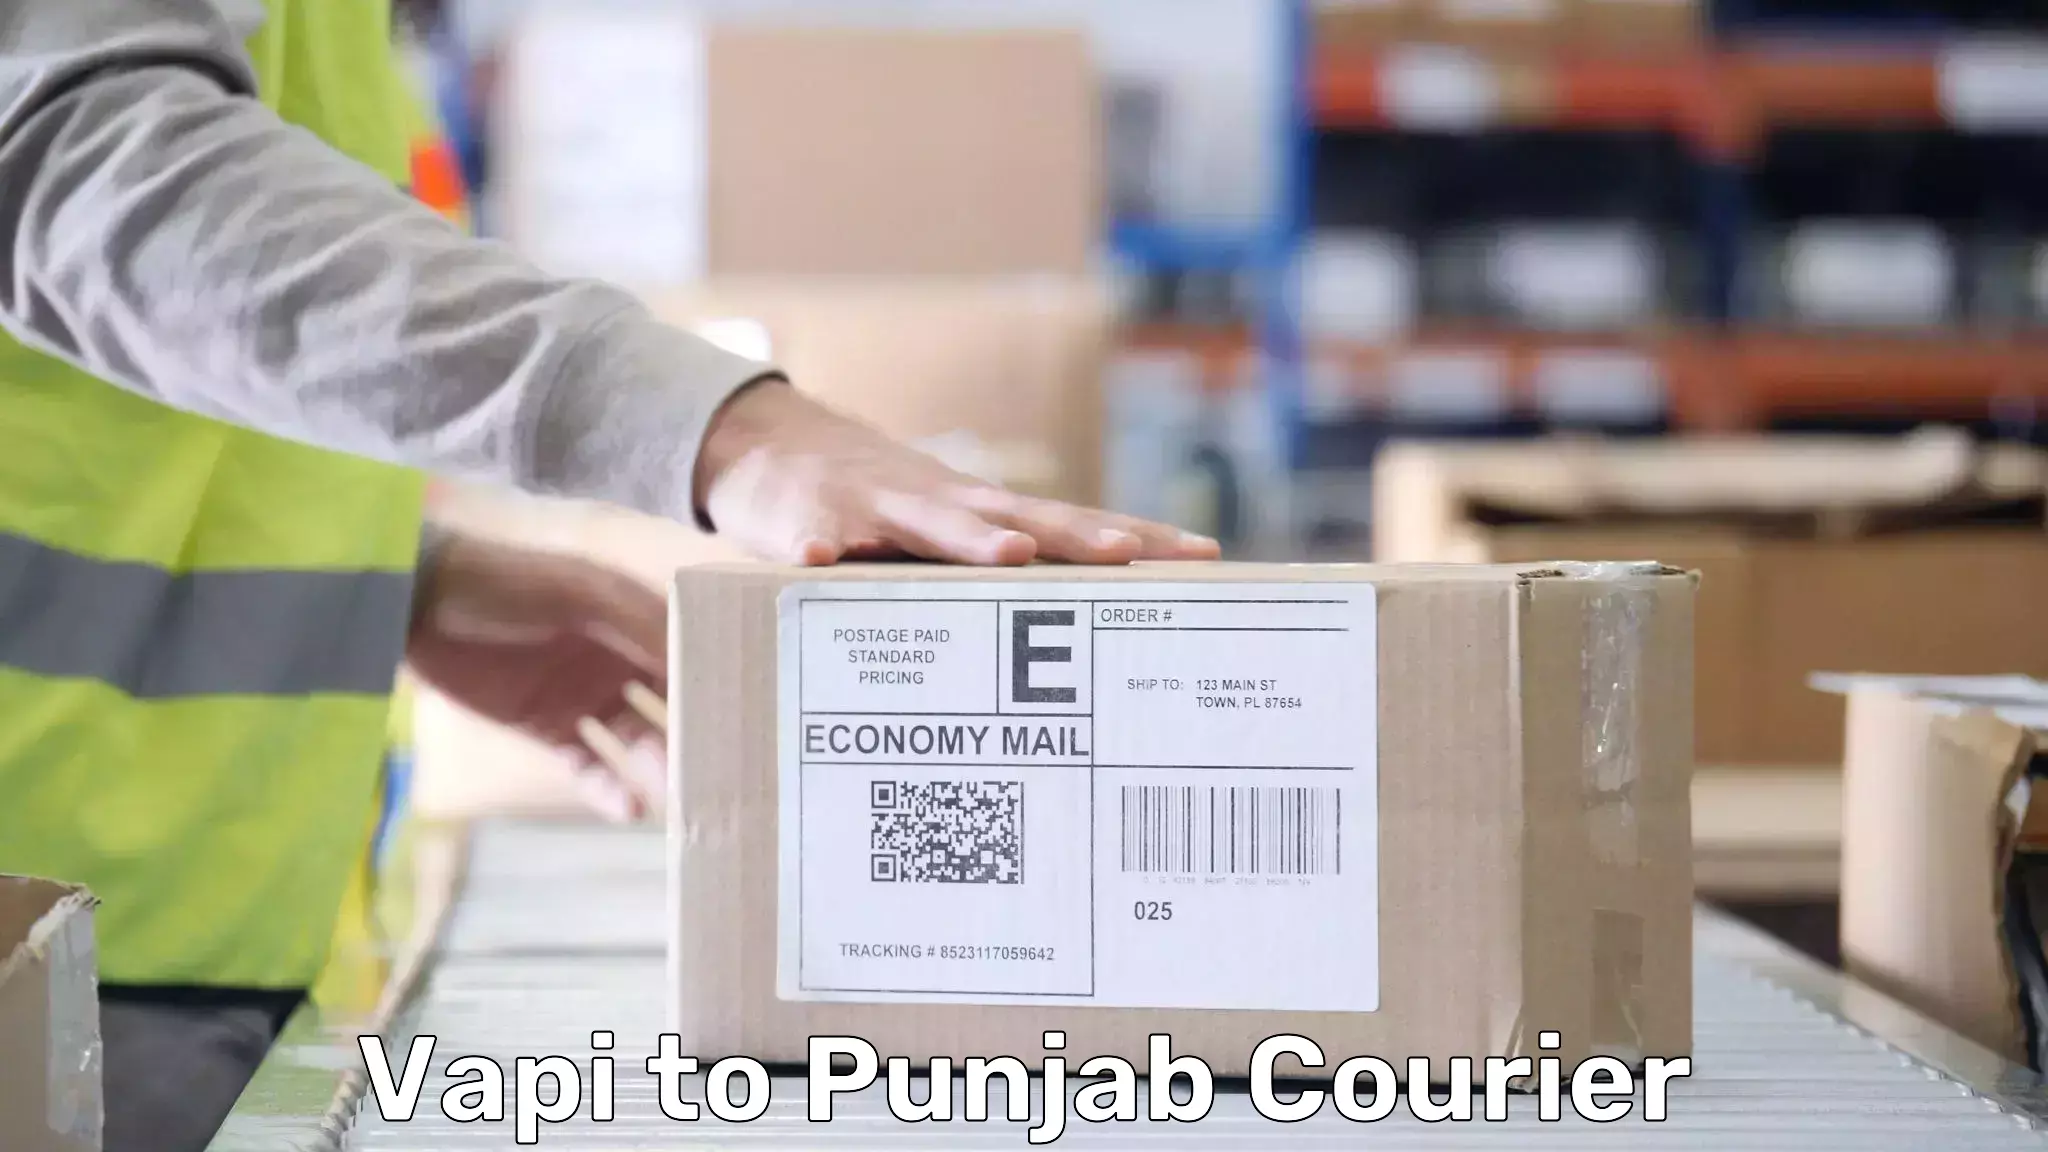 Luggage transport company Vapi to Punjab